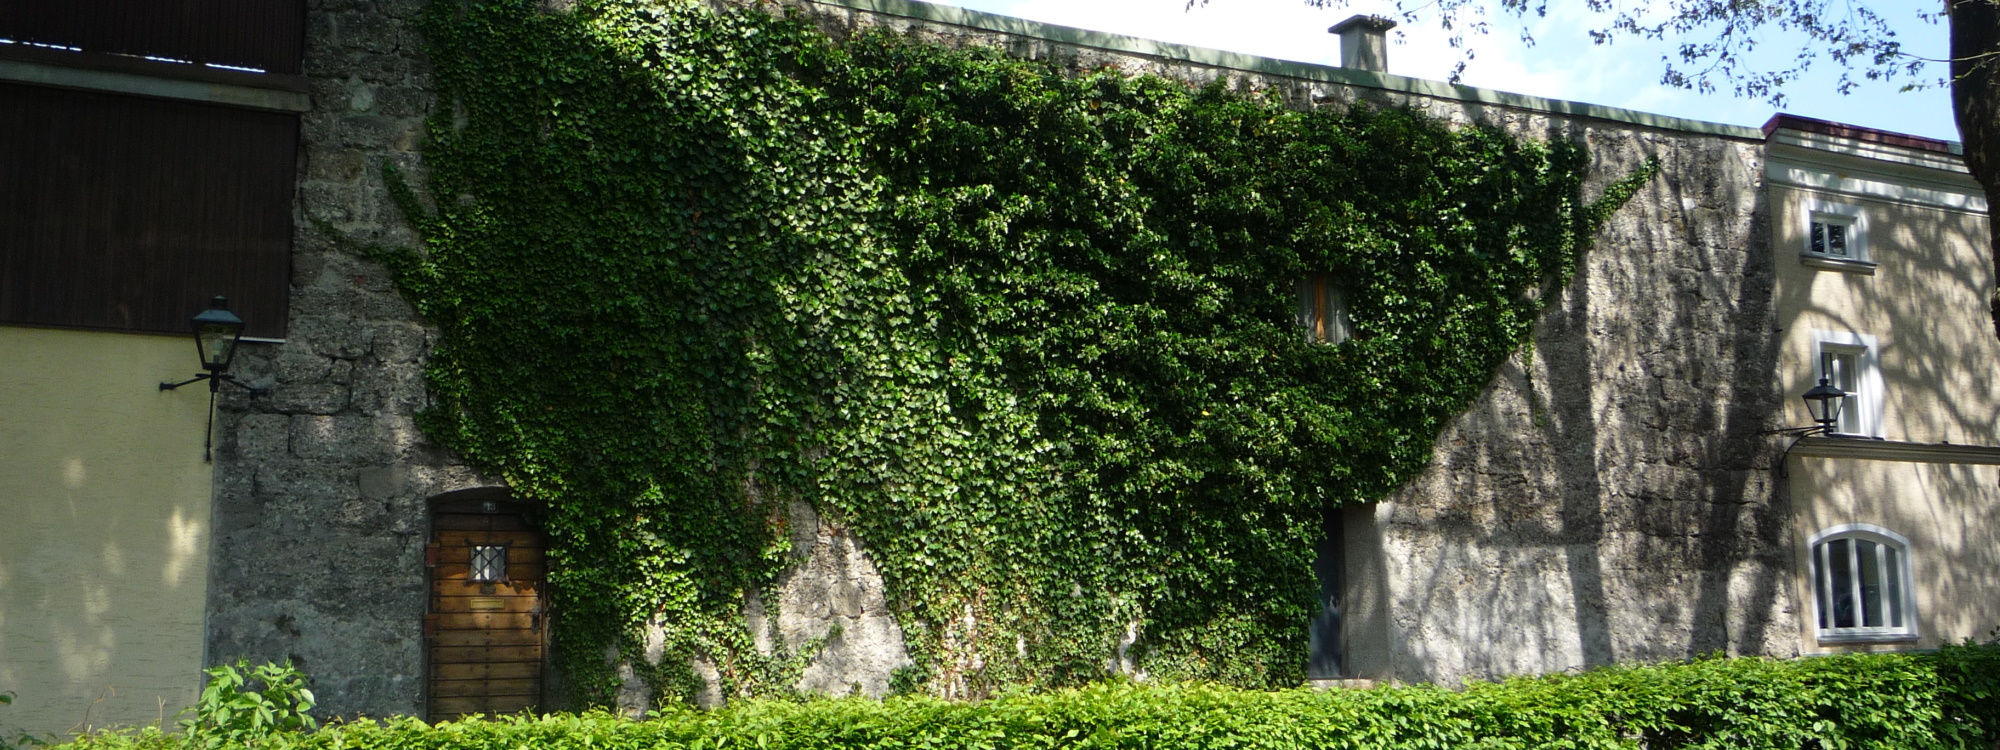 Erhaltener Teil der Stadtmauer mit Wohneinheit und Efeubewuchs an der Fassade